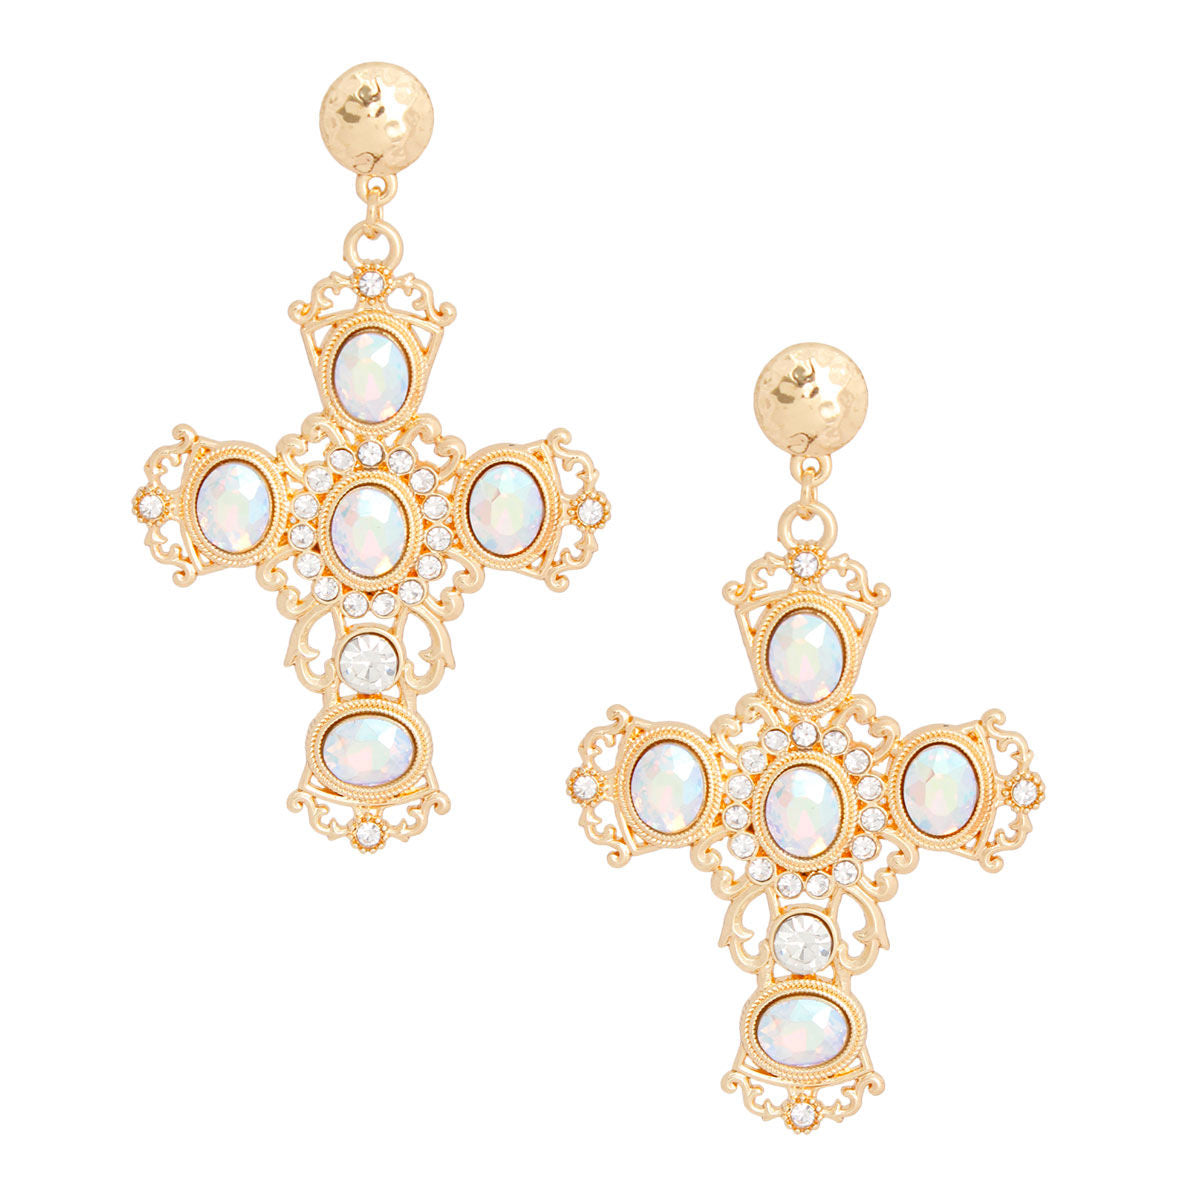 Gold AURBO Fancy Cross Earrings